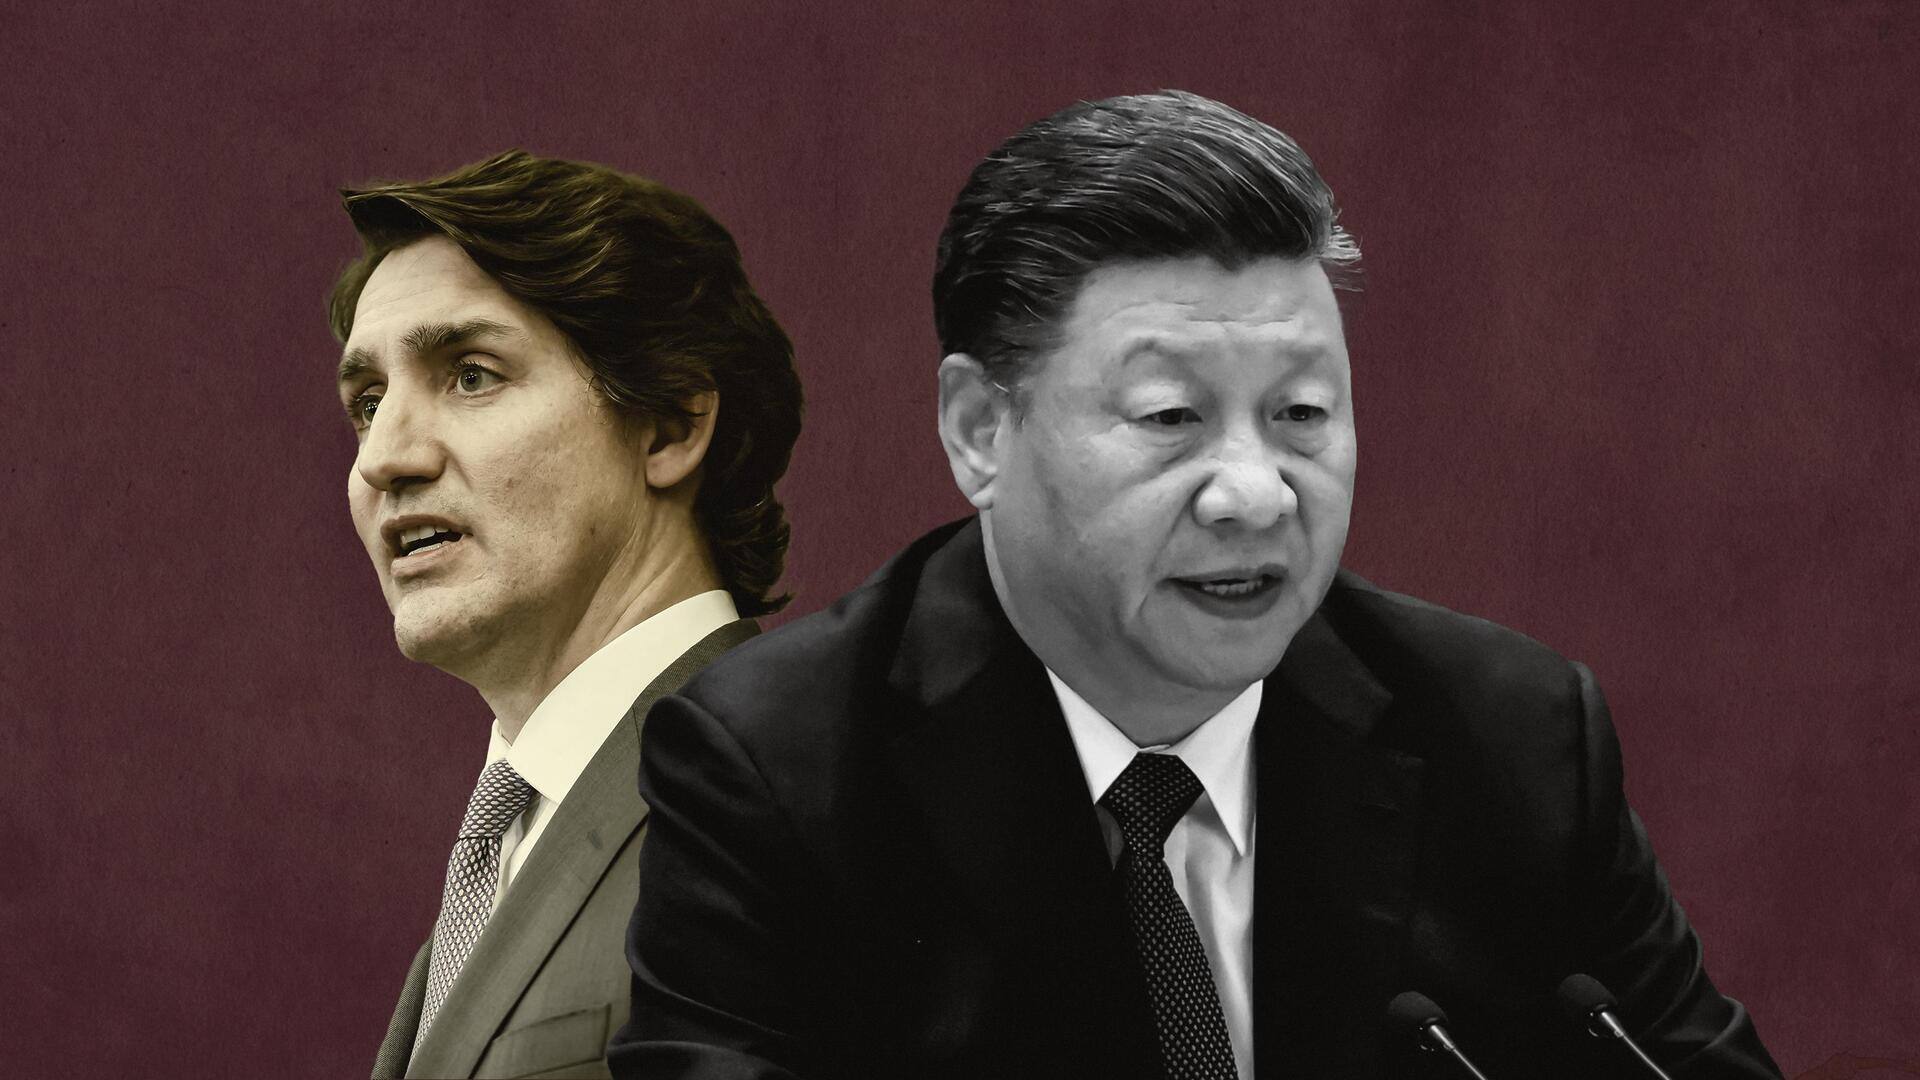 कनाडा और चीन ने एक-दूसरे के राजनयिकों को देश से बाहर निकाला, जानें पूरा मामला